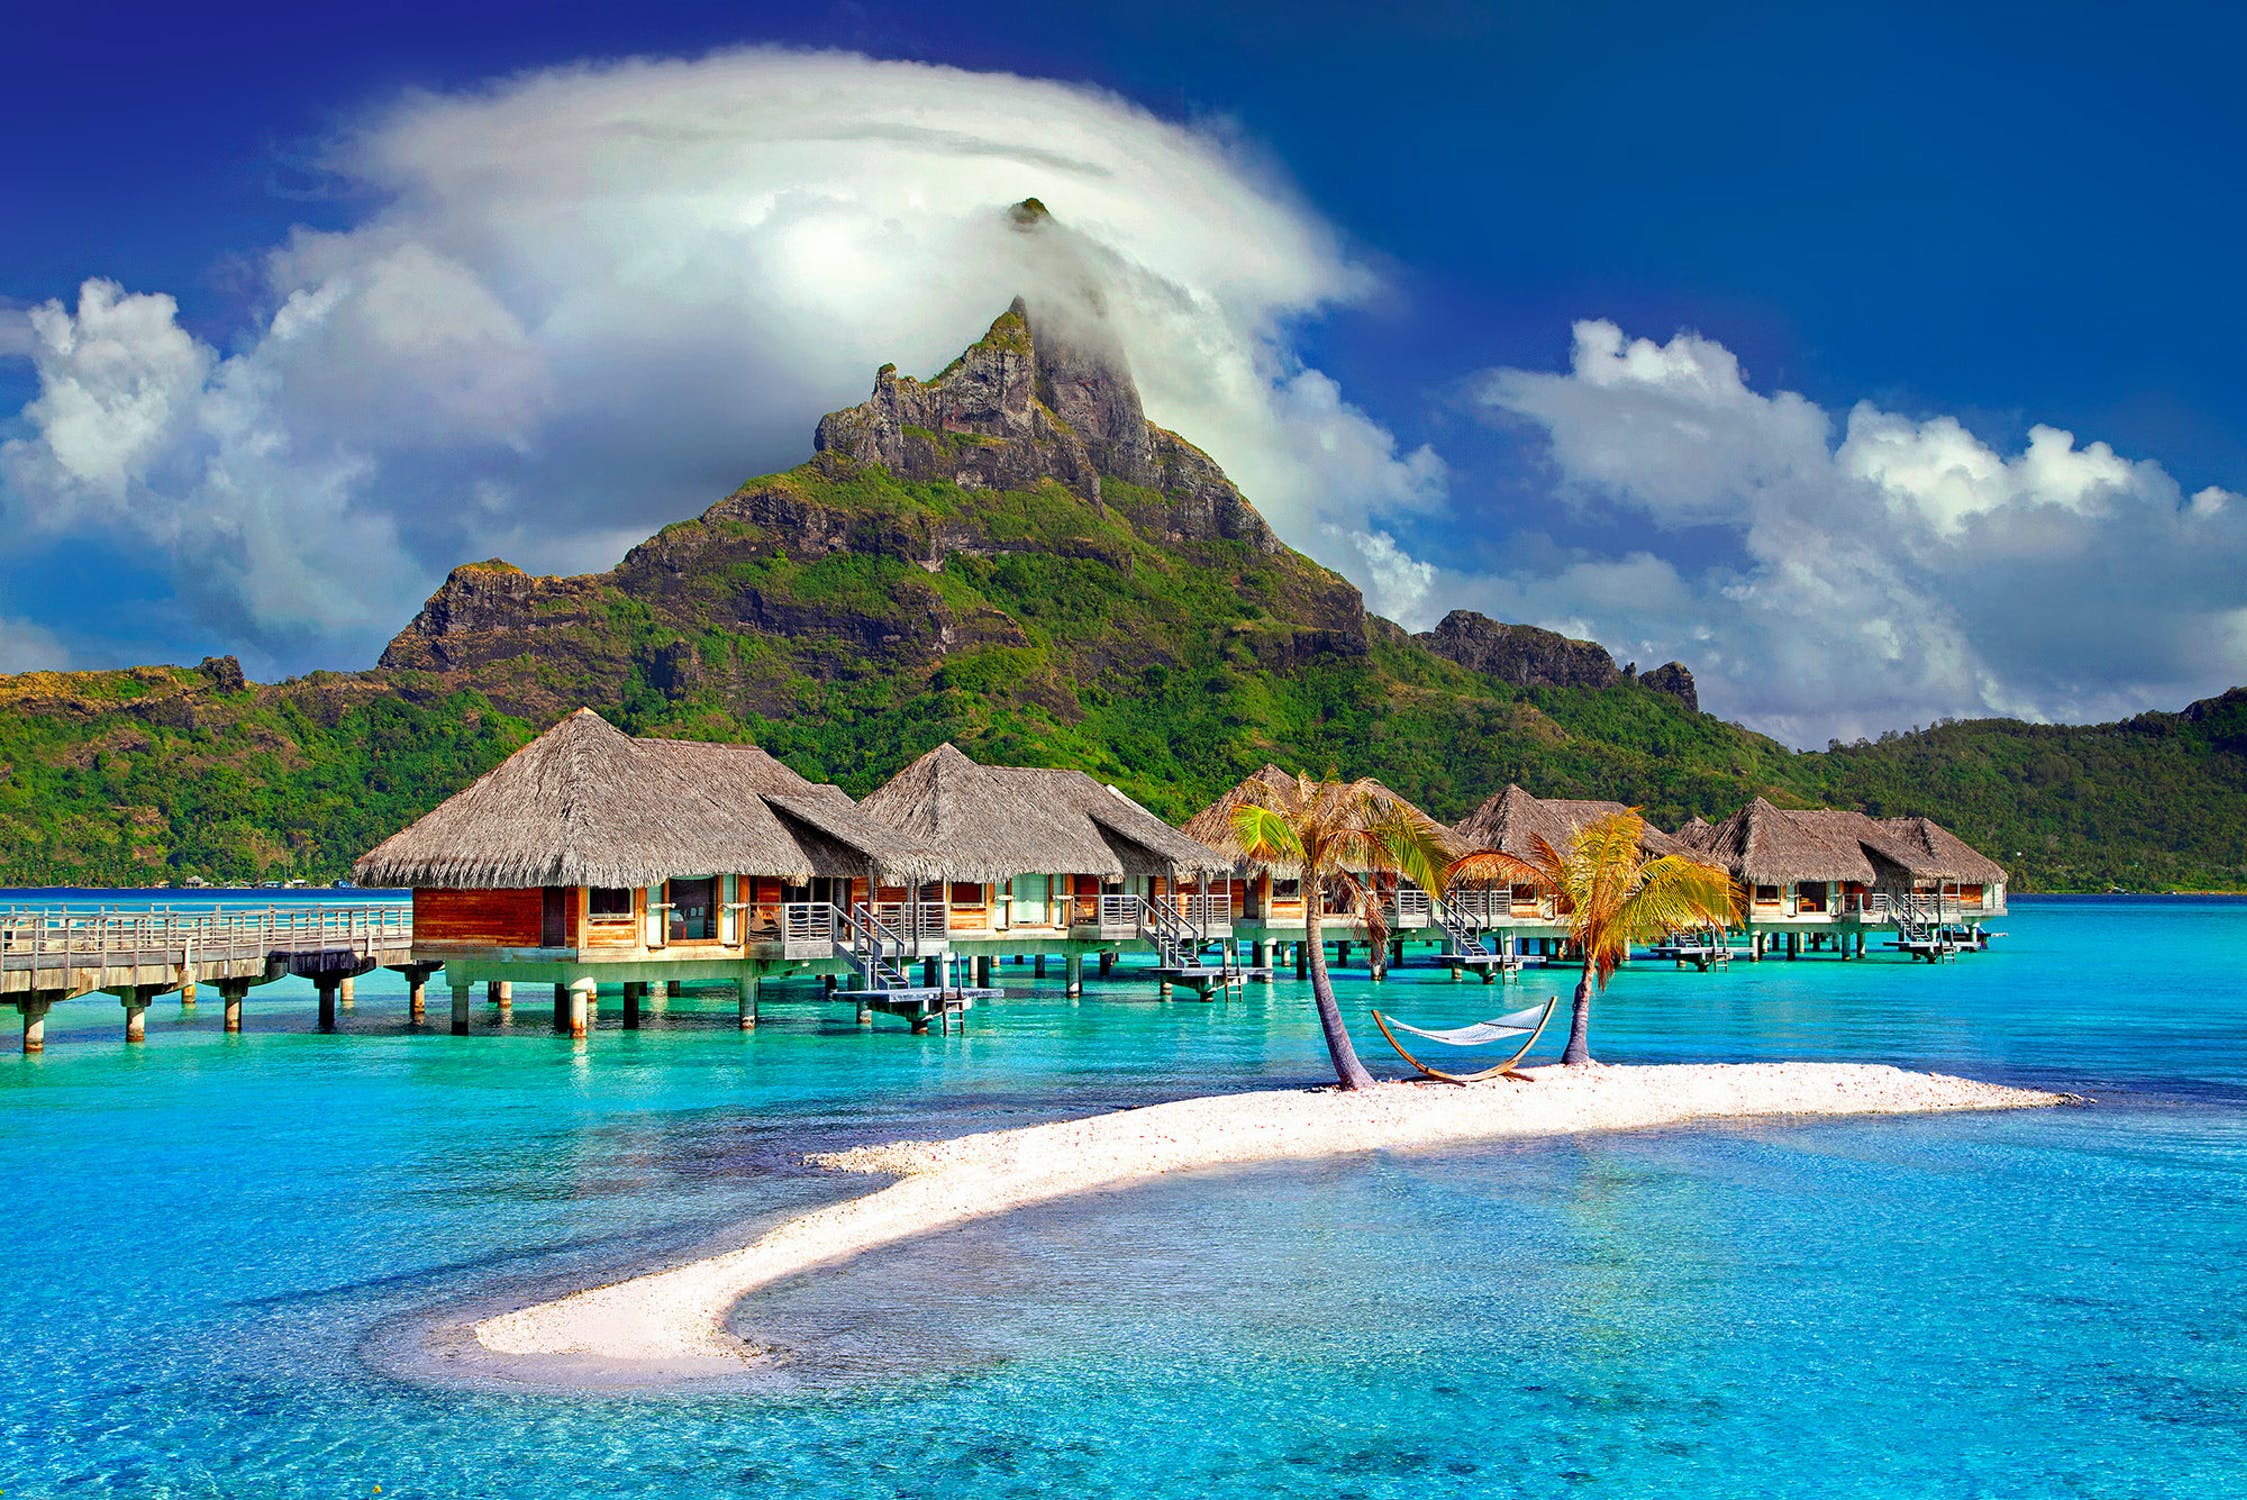 Gerald a emmené Edith à Tahiti pour des vacances surprises | Source : Pexels